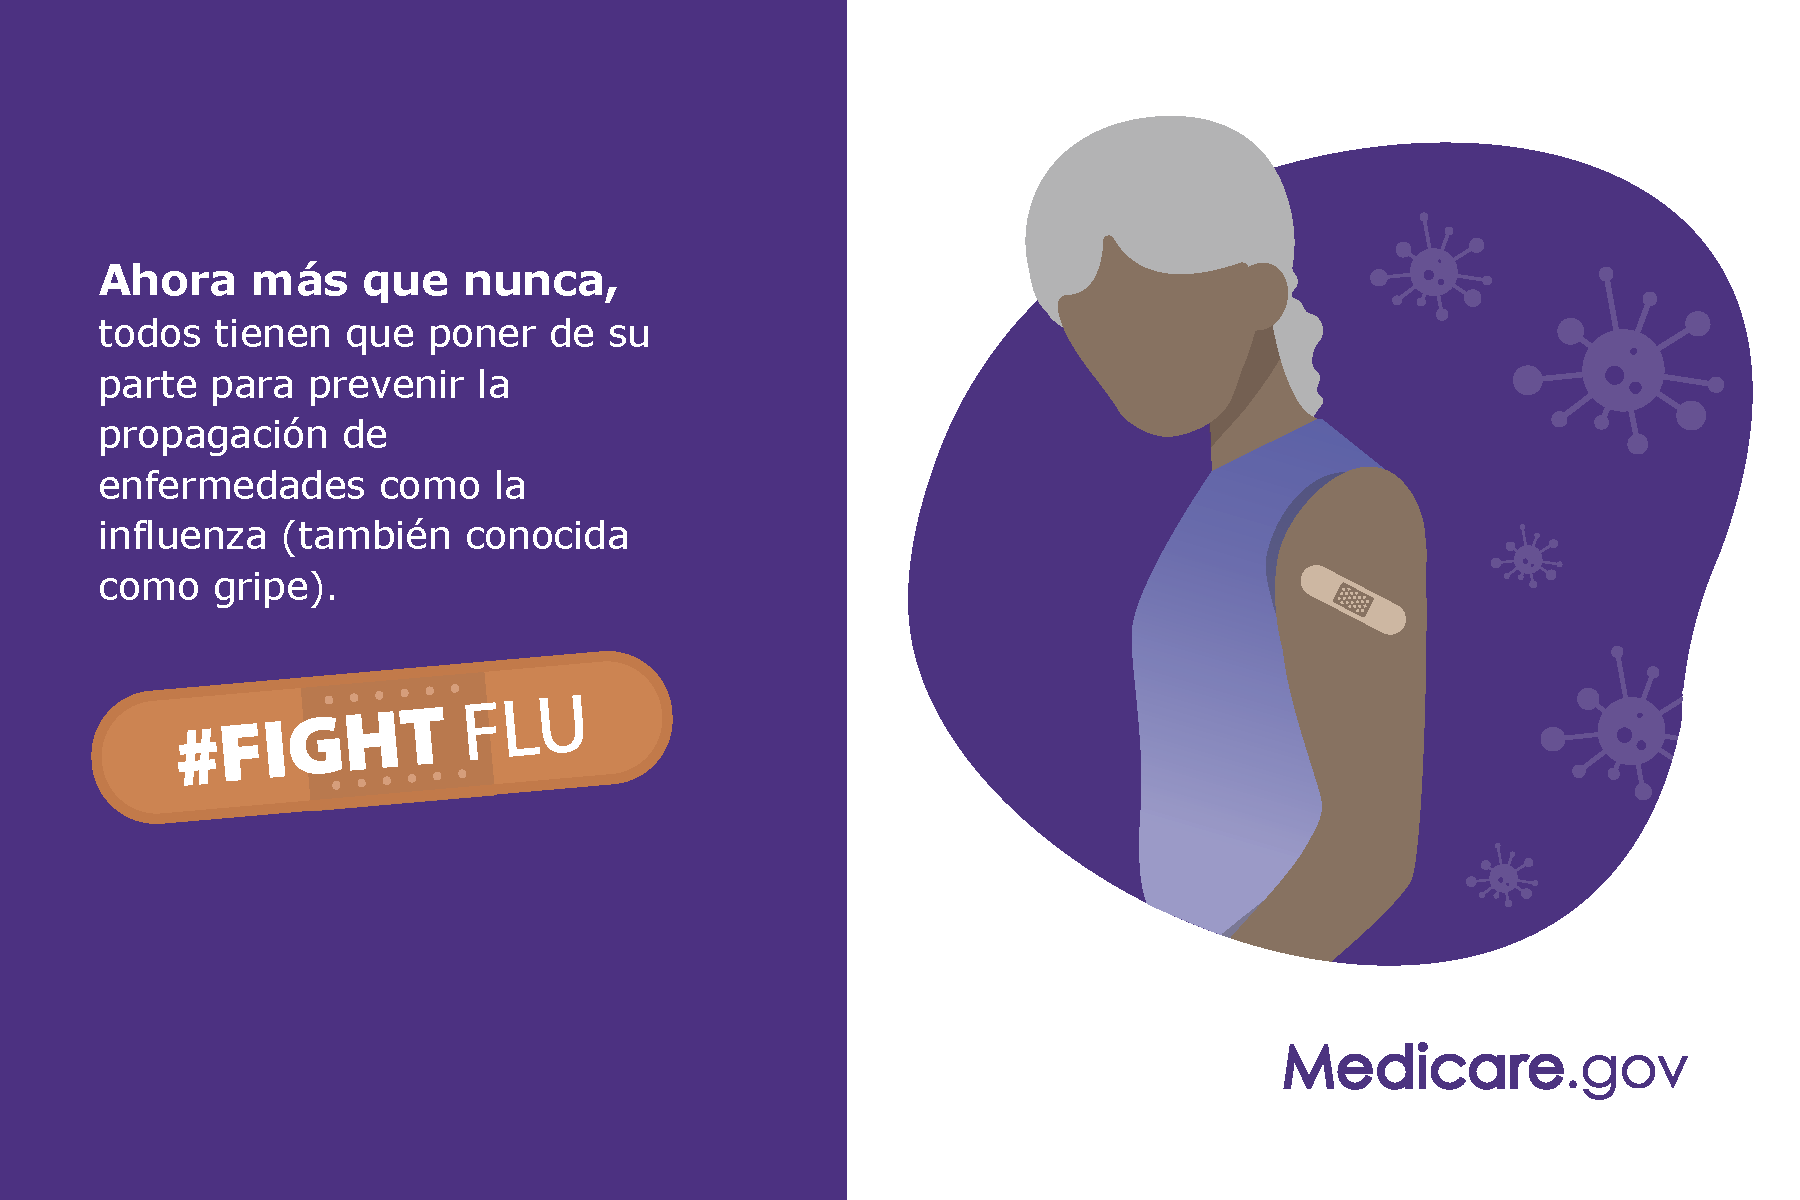 Ahora más que nunca, todos tienen que poner de su parte para prevenir la propagación de enfermedades como la infulenza (también concida como gripe).  #FIGHT FLU  Medicare.gov